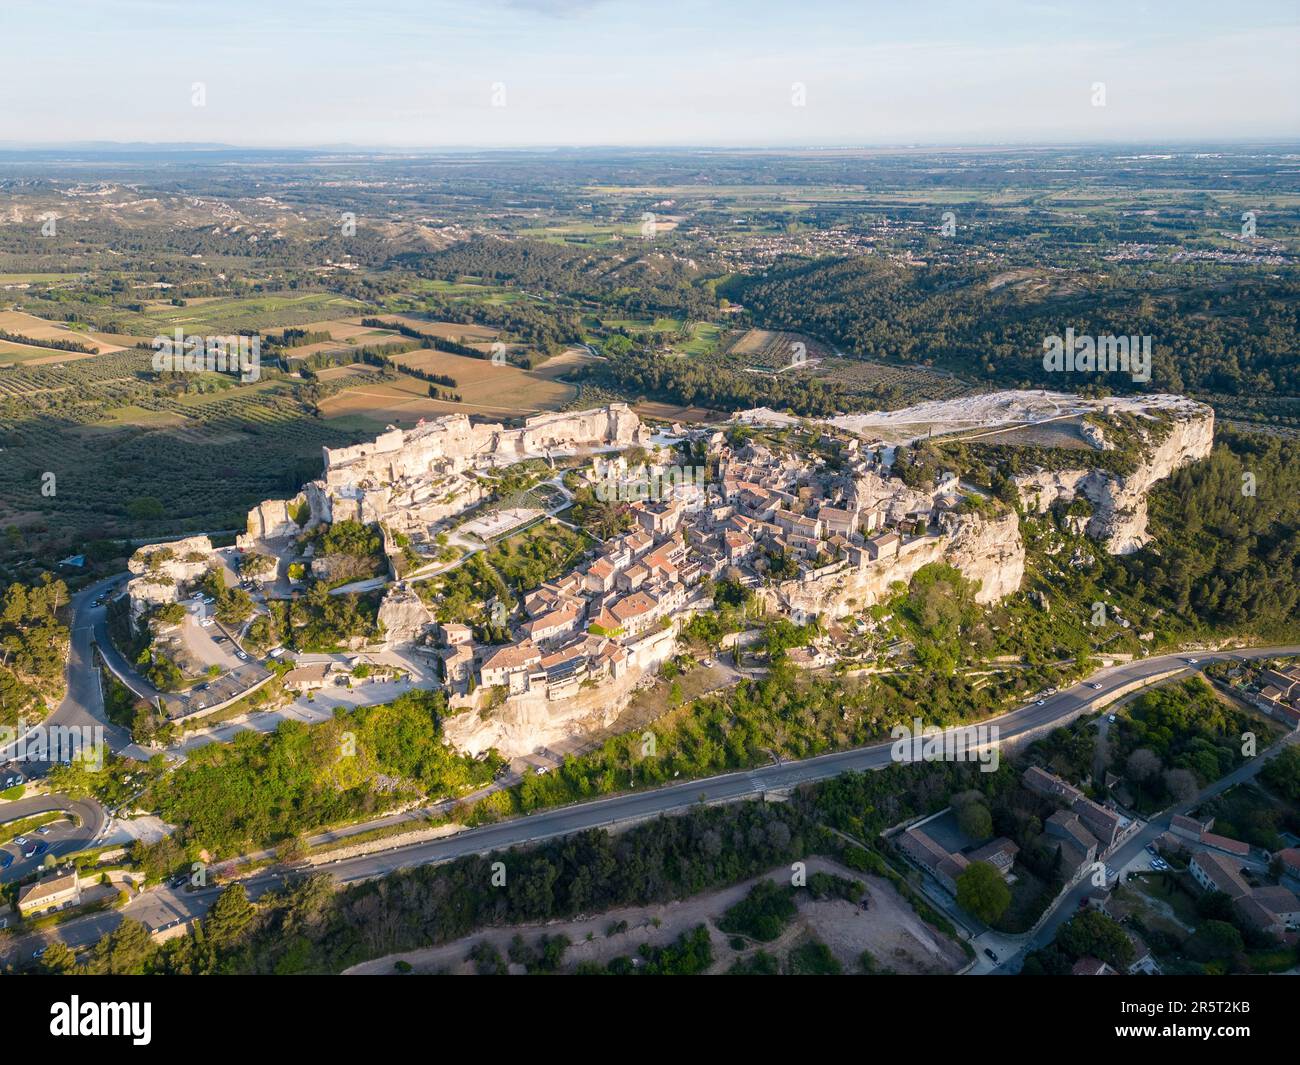 France, Bouches-du-Rhône, Parc naturel régional des Alpilles, les Baux-de-Provence, labellisé un des plus beaux villages de France, Val d'Enfer avec le village et les ruines du château fort du 11e siècle (vue aérienne) Banque D'Images